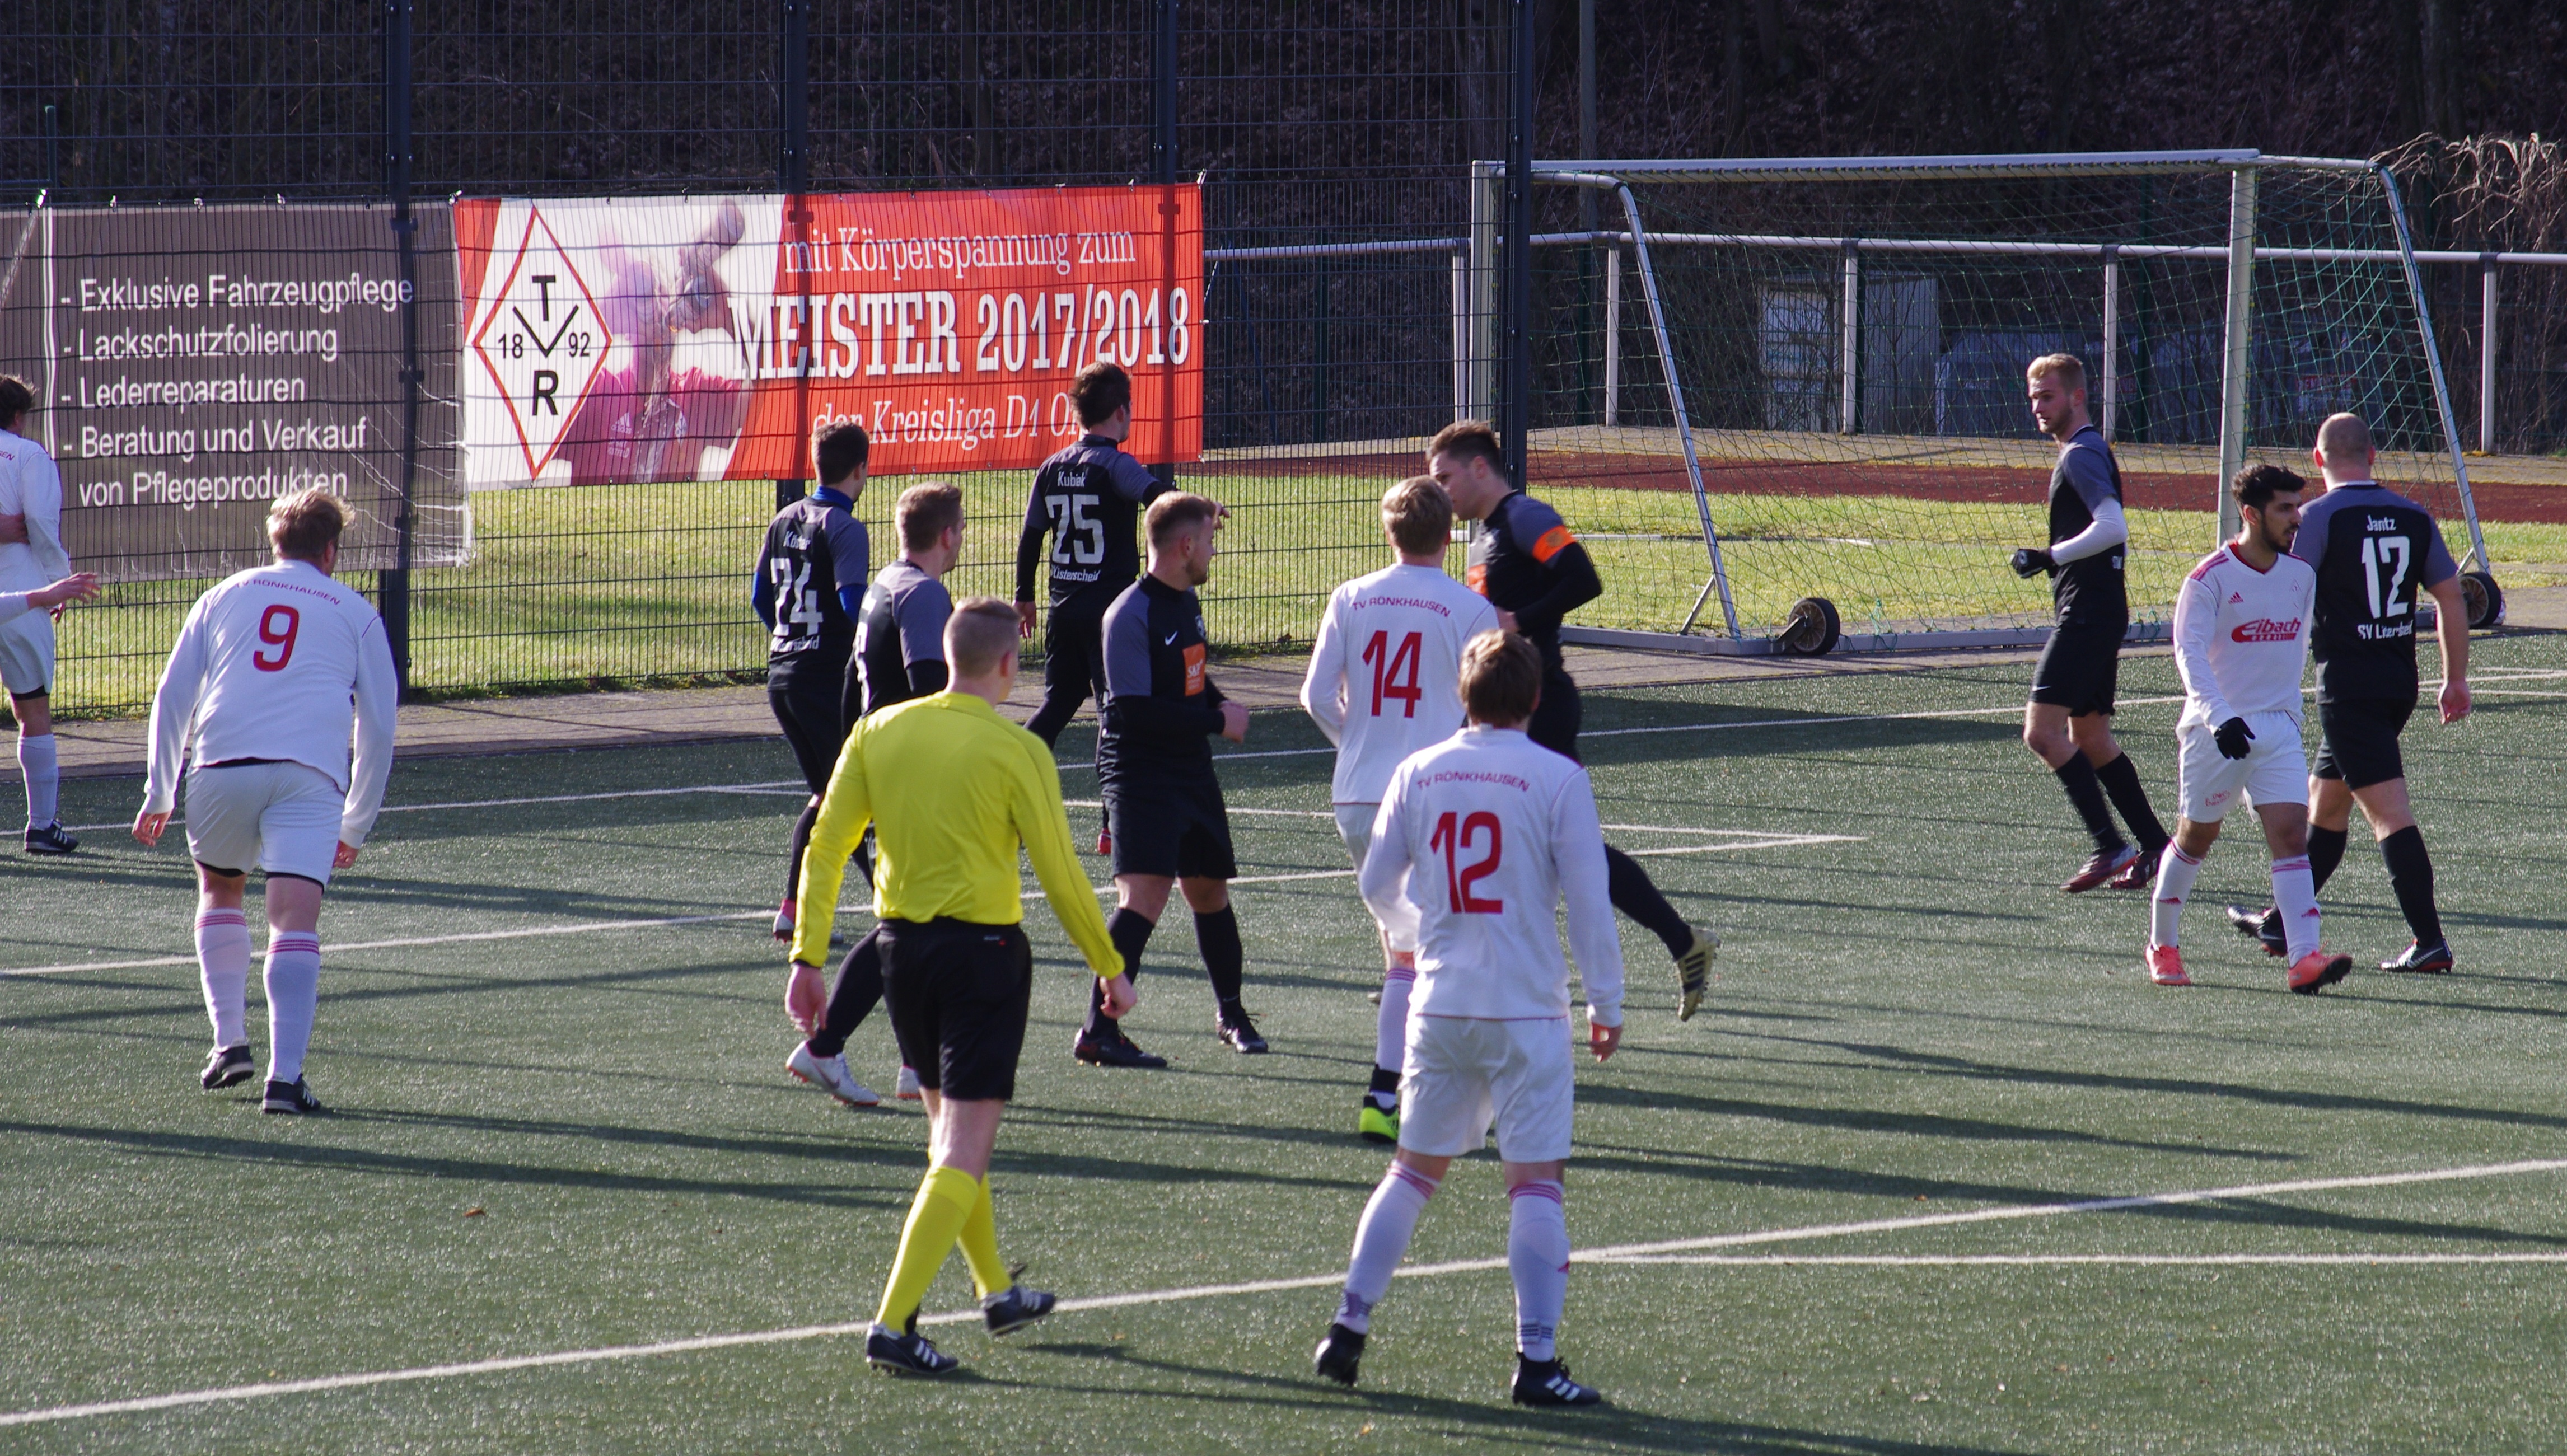 Ecke vs SV Listerscheid